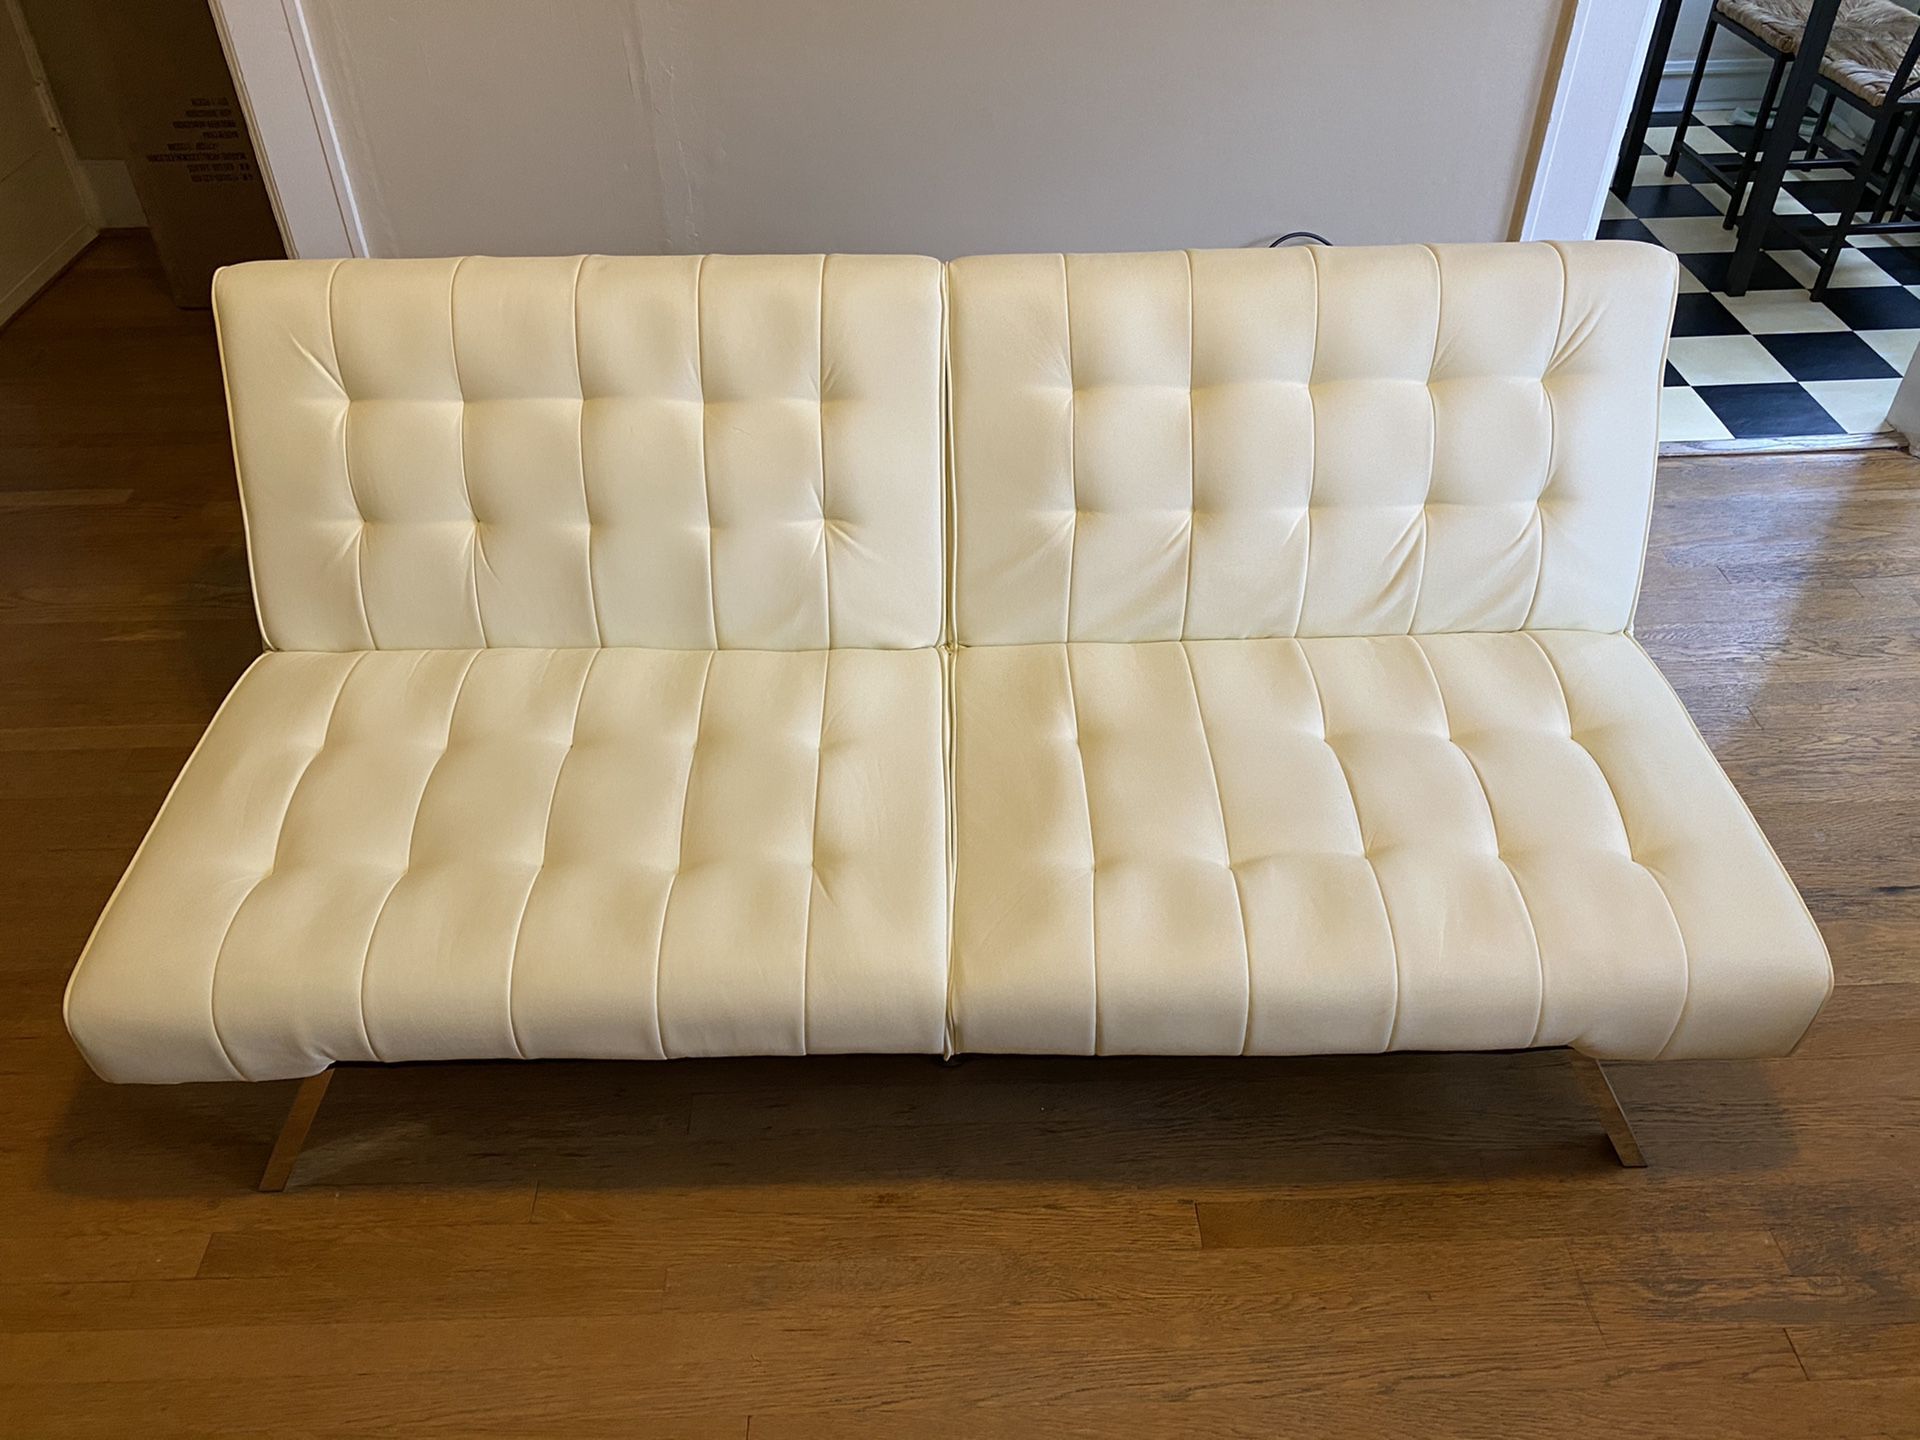 Leather vanilla white/cream couch/futon PERFECT CONDITION!